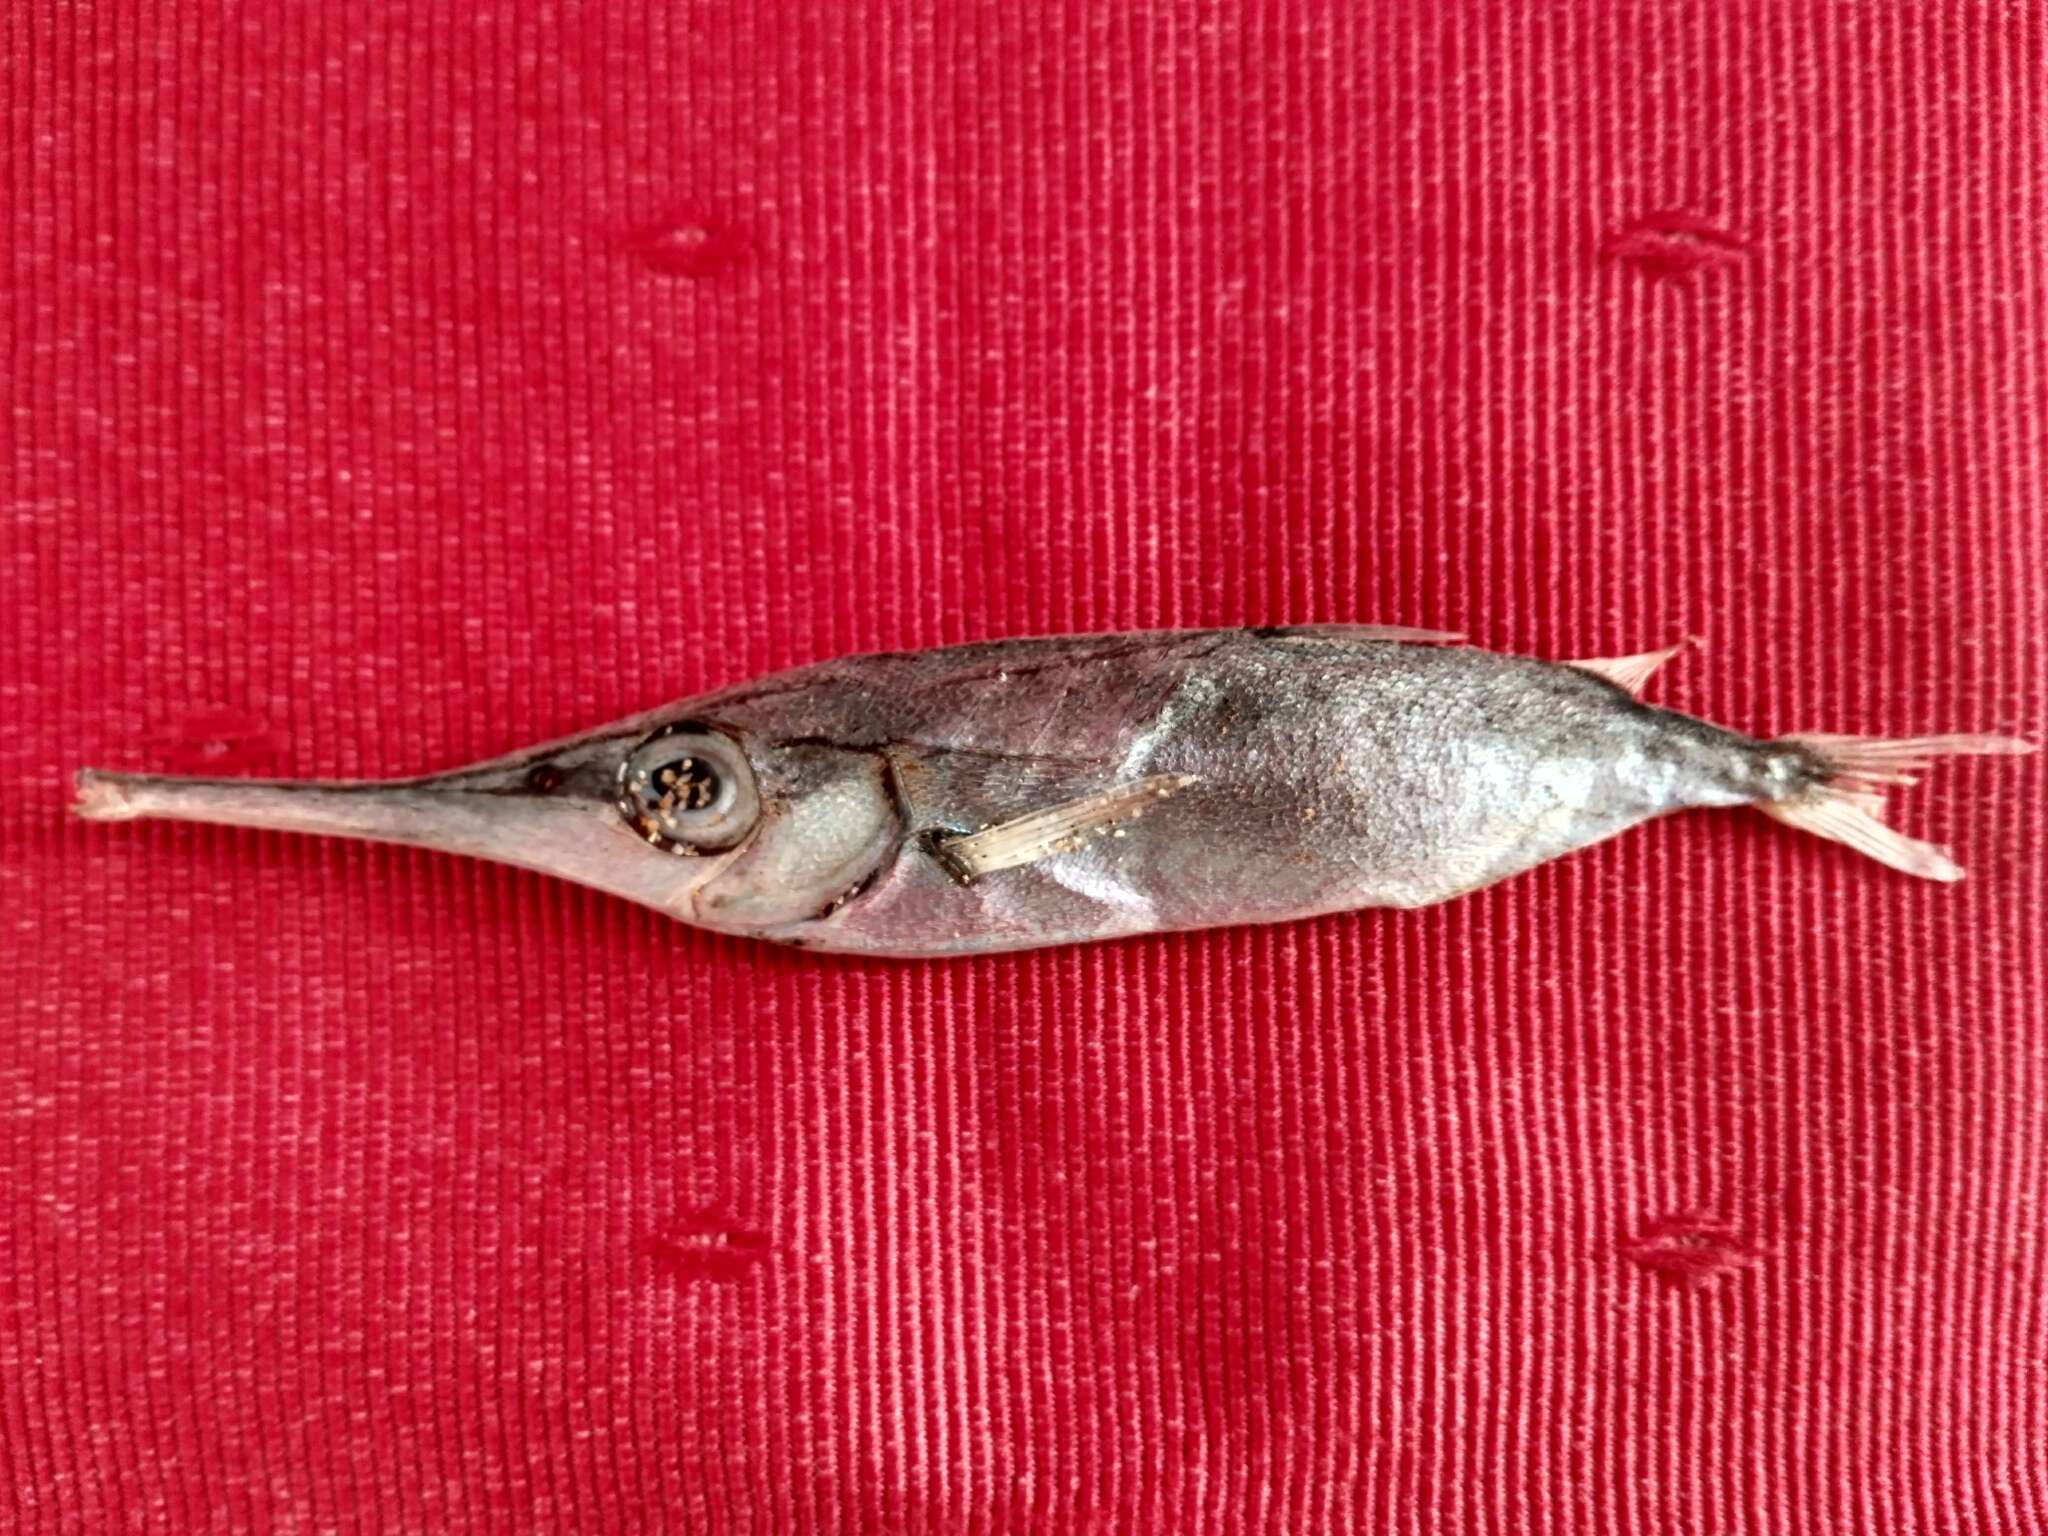 Image of Slender snipefish